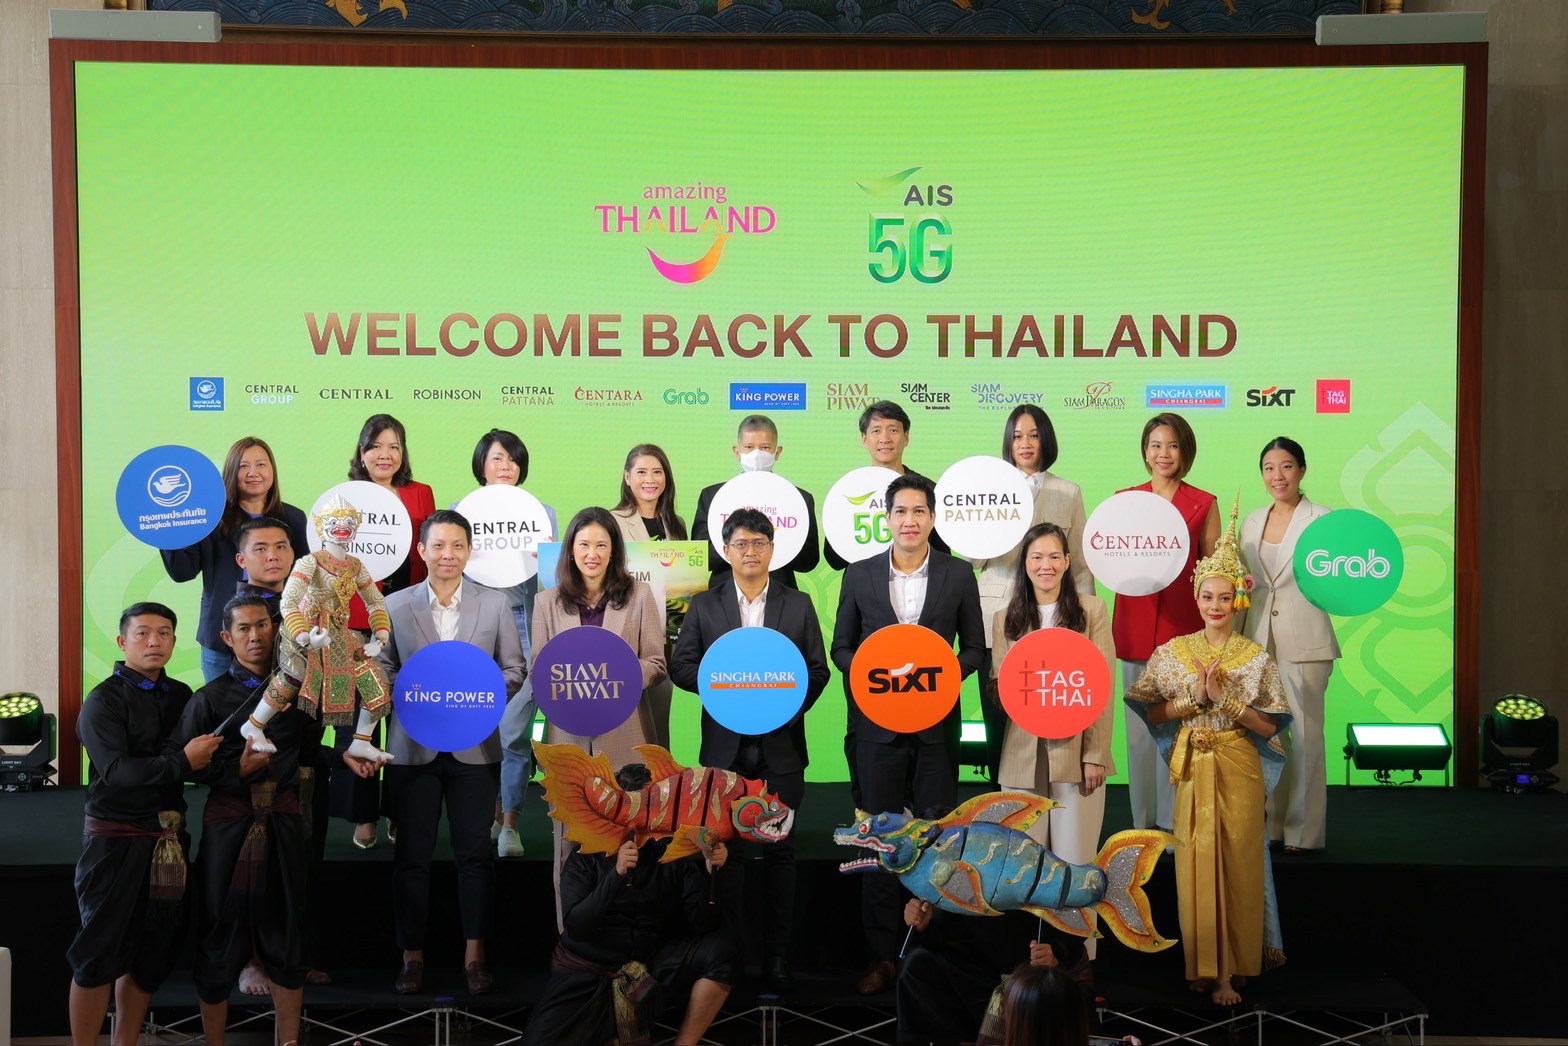 ททท. ผนึก AIS 5G ชูแคมเปญ “Welcome Back to Thailand” ดึงนักท่องเที่ยวต่างชาติเที่ยวไทย ผ่าน Amazing Thailand SIM